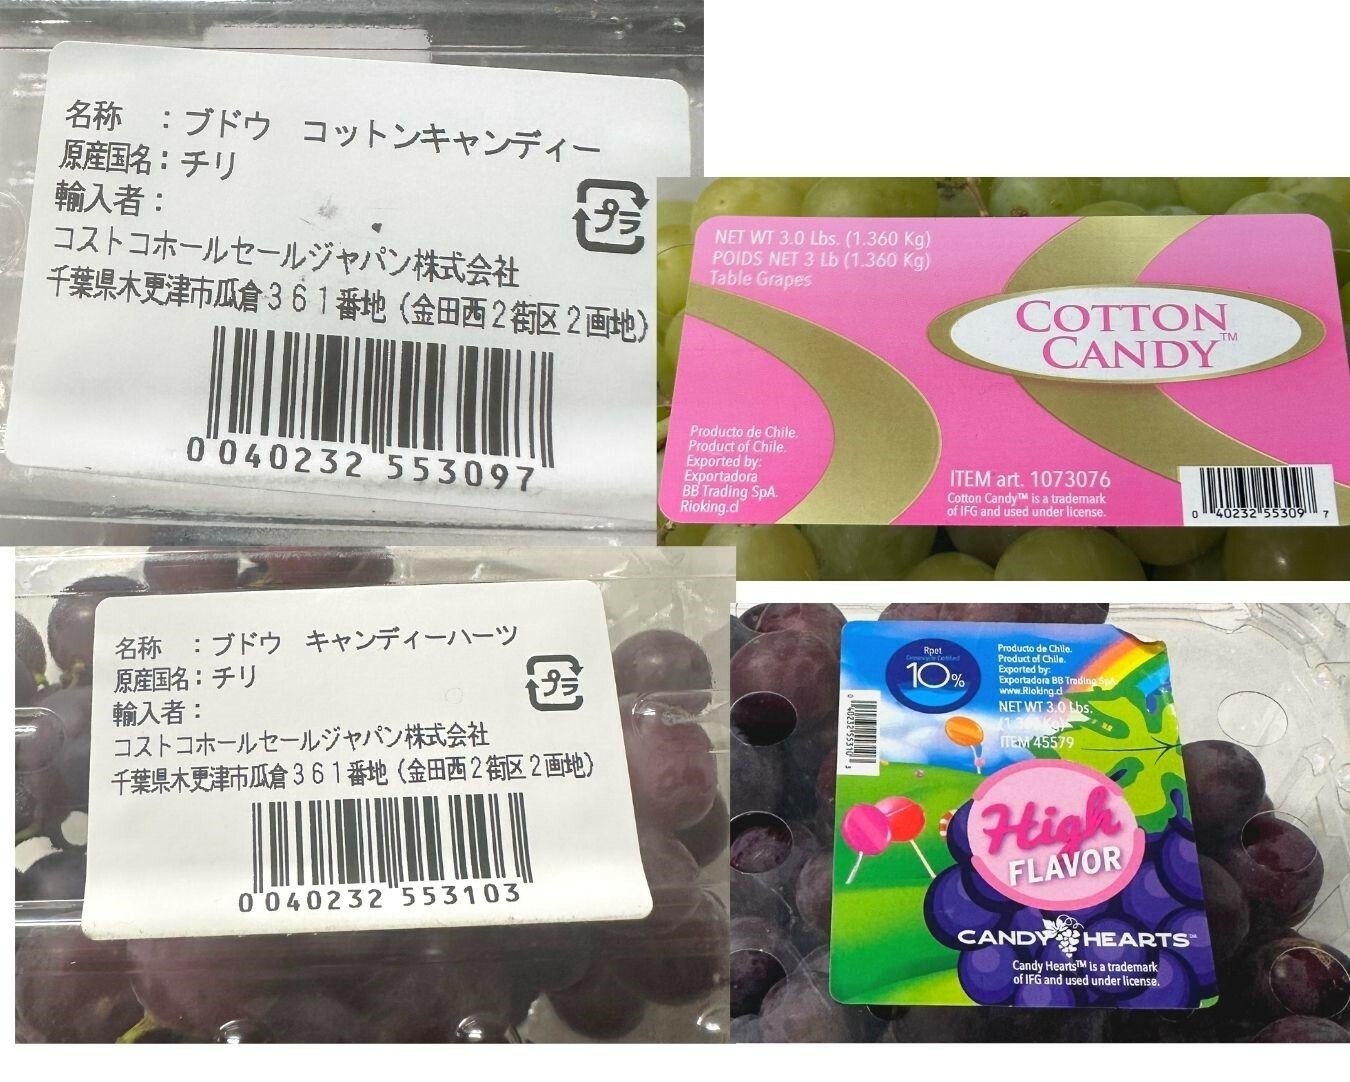 【コストコ】コットンキャンディ・キャンディハーツ食べ比べ